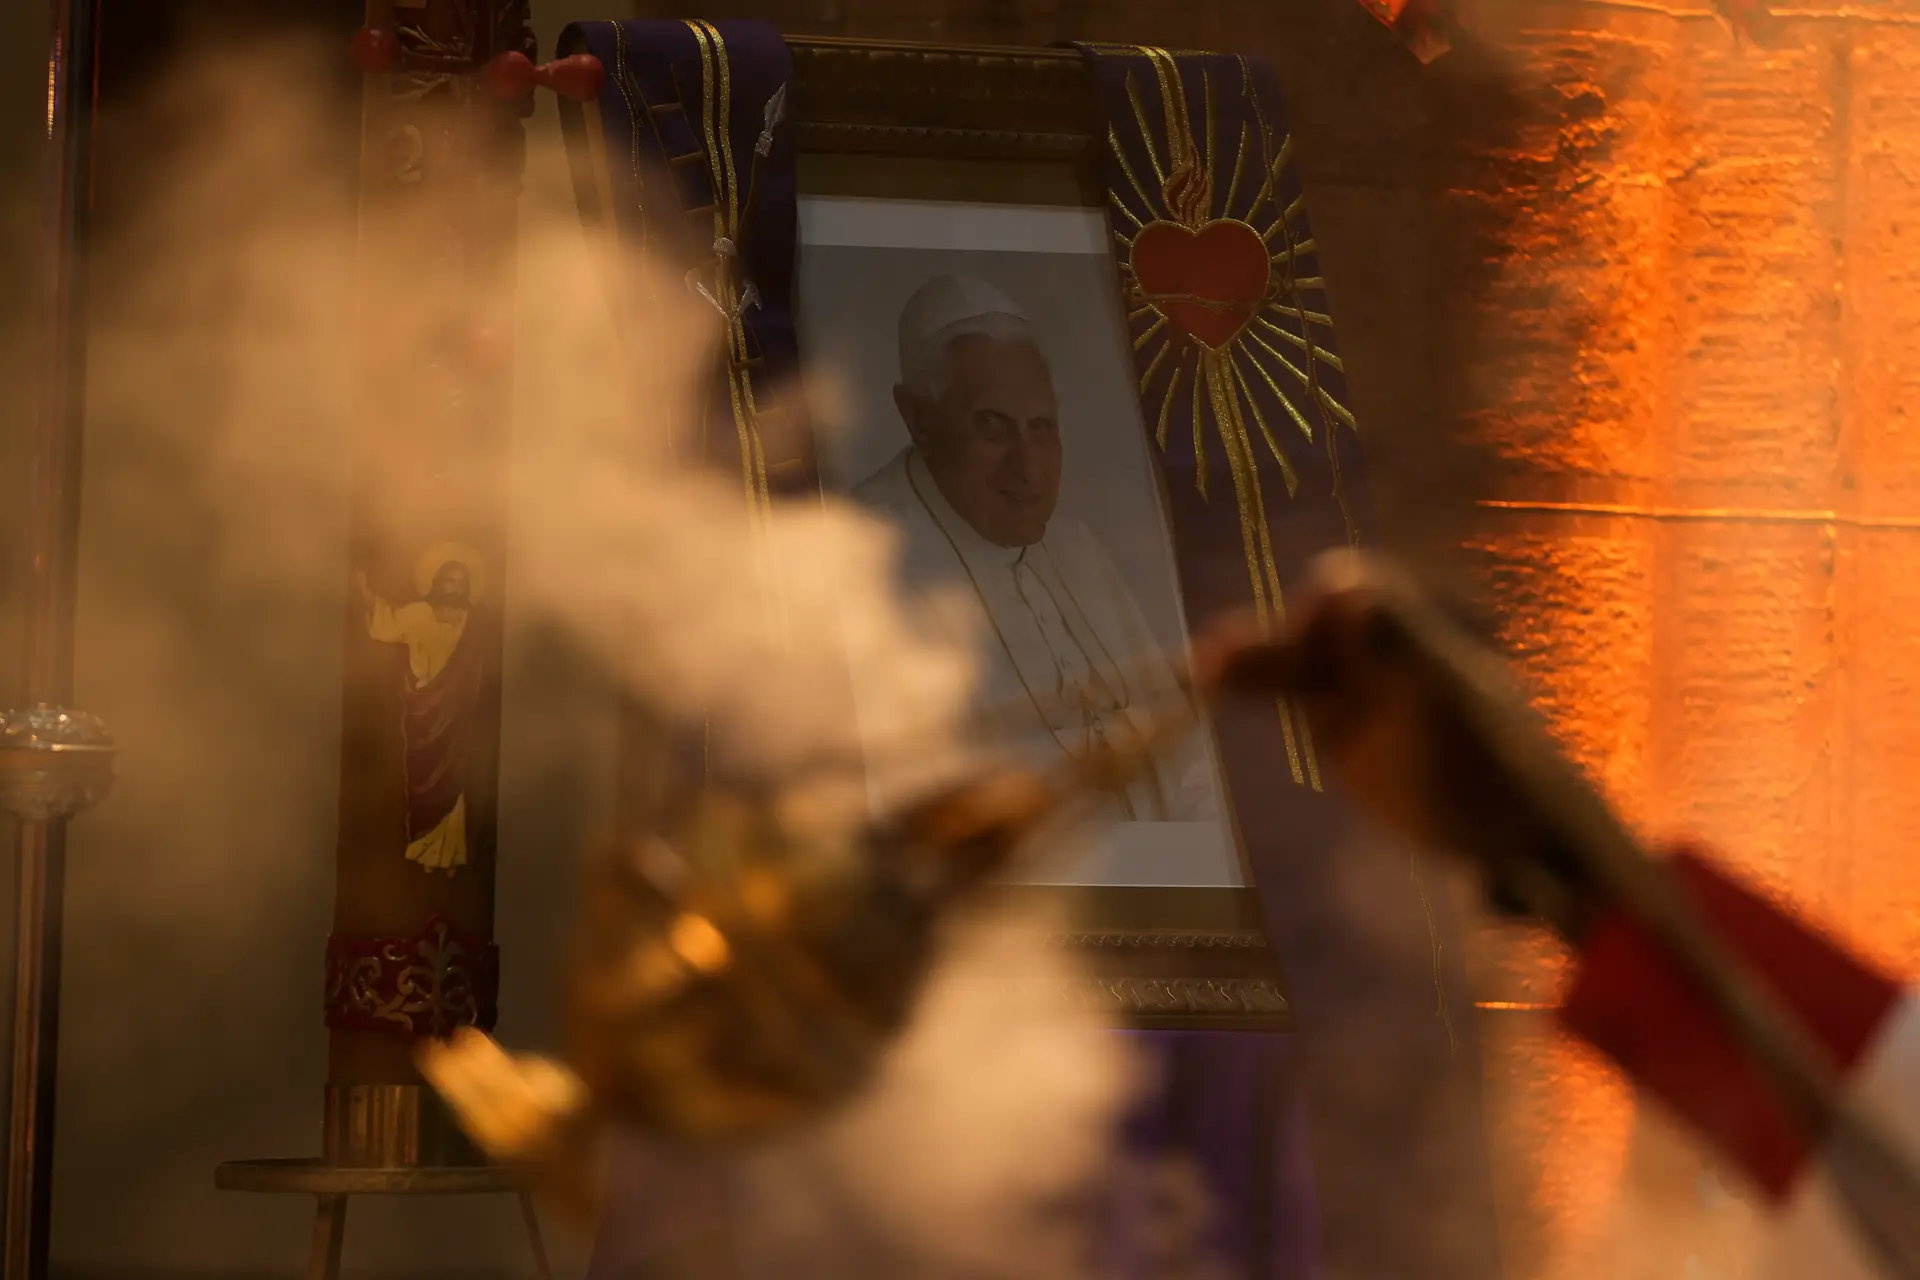 O que diz o testamento de Bento XVI? Pede "perdão" aos que possa ter prejudicado